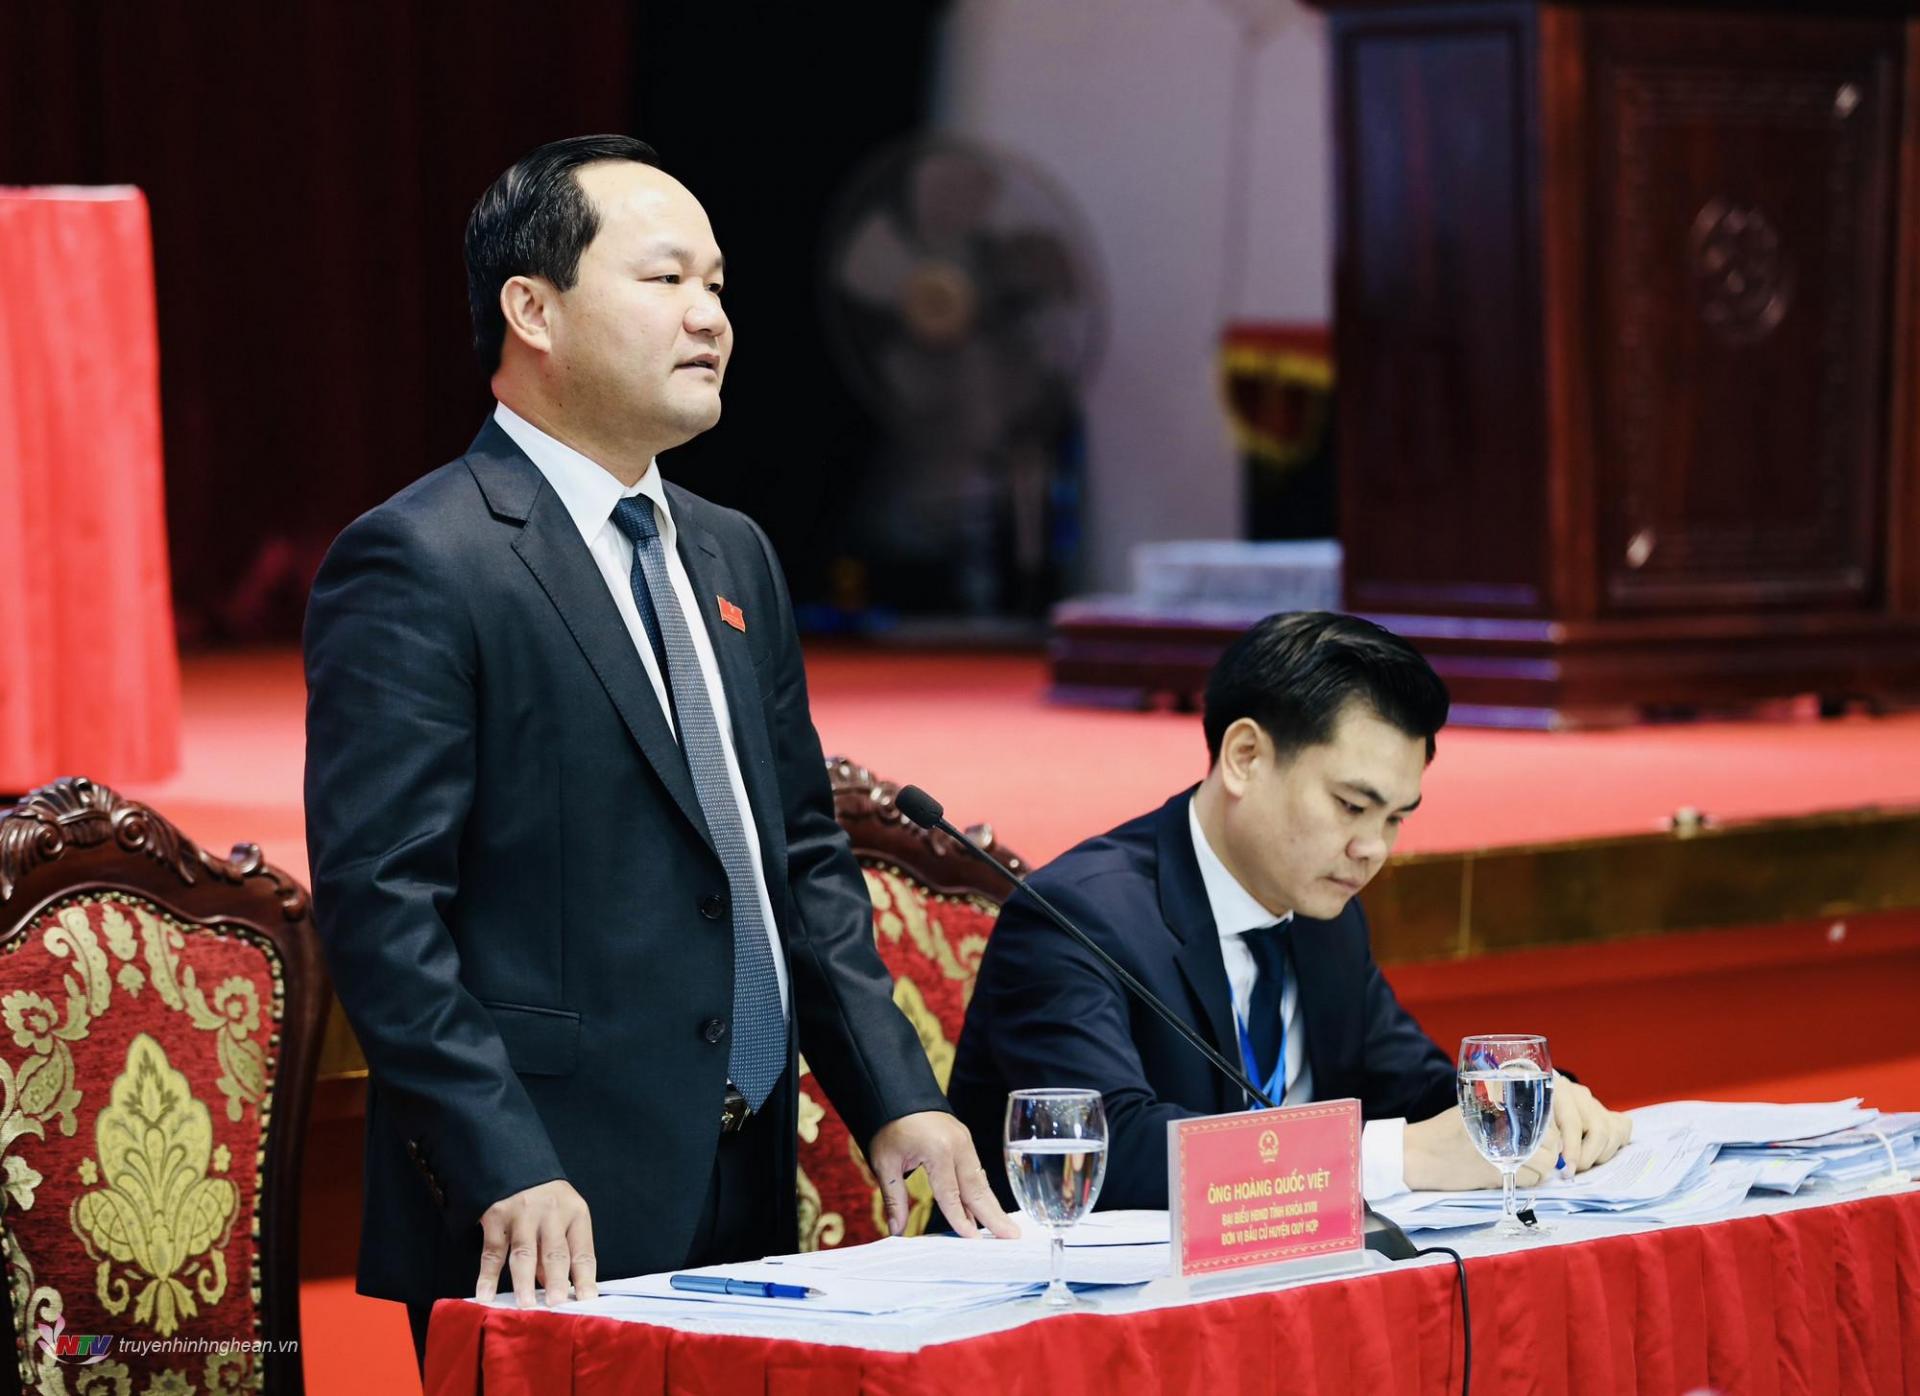 Giám đốc Sở Tài nguyên và Môi trường Hoàng Quốc Việt đăng đàn trả lời chất vấn của các đại biểu.